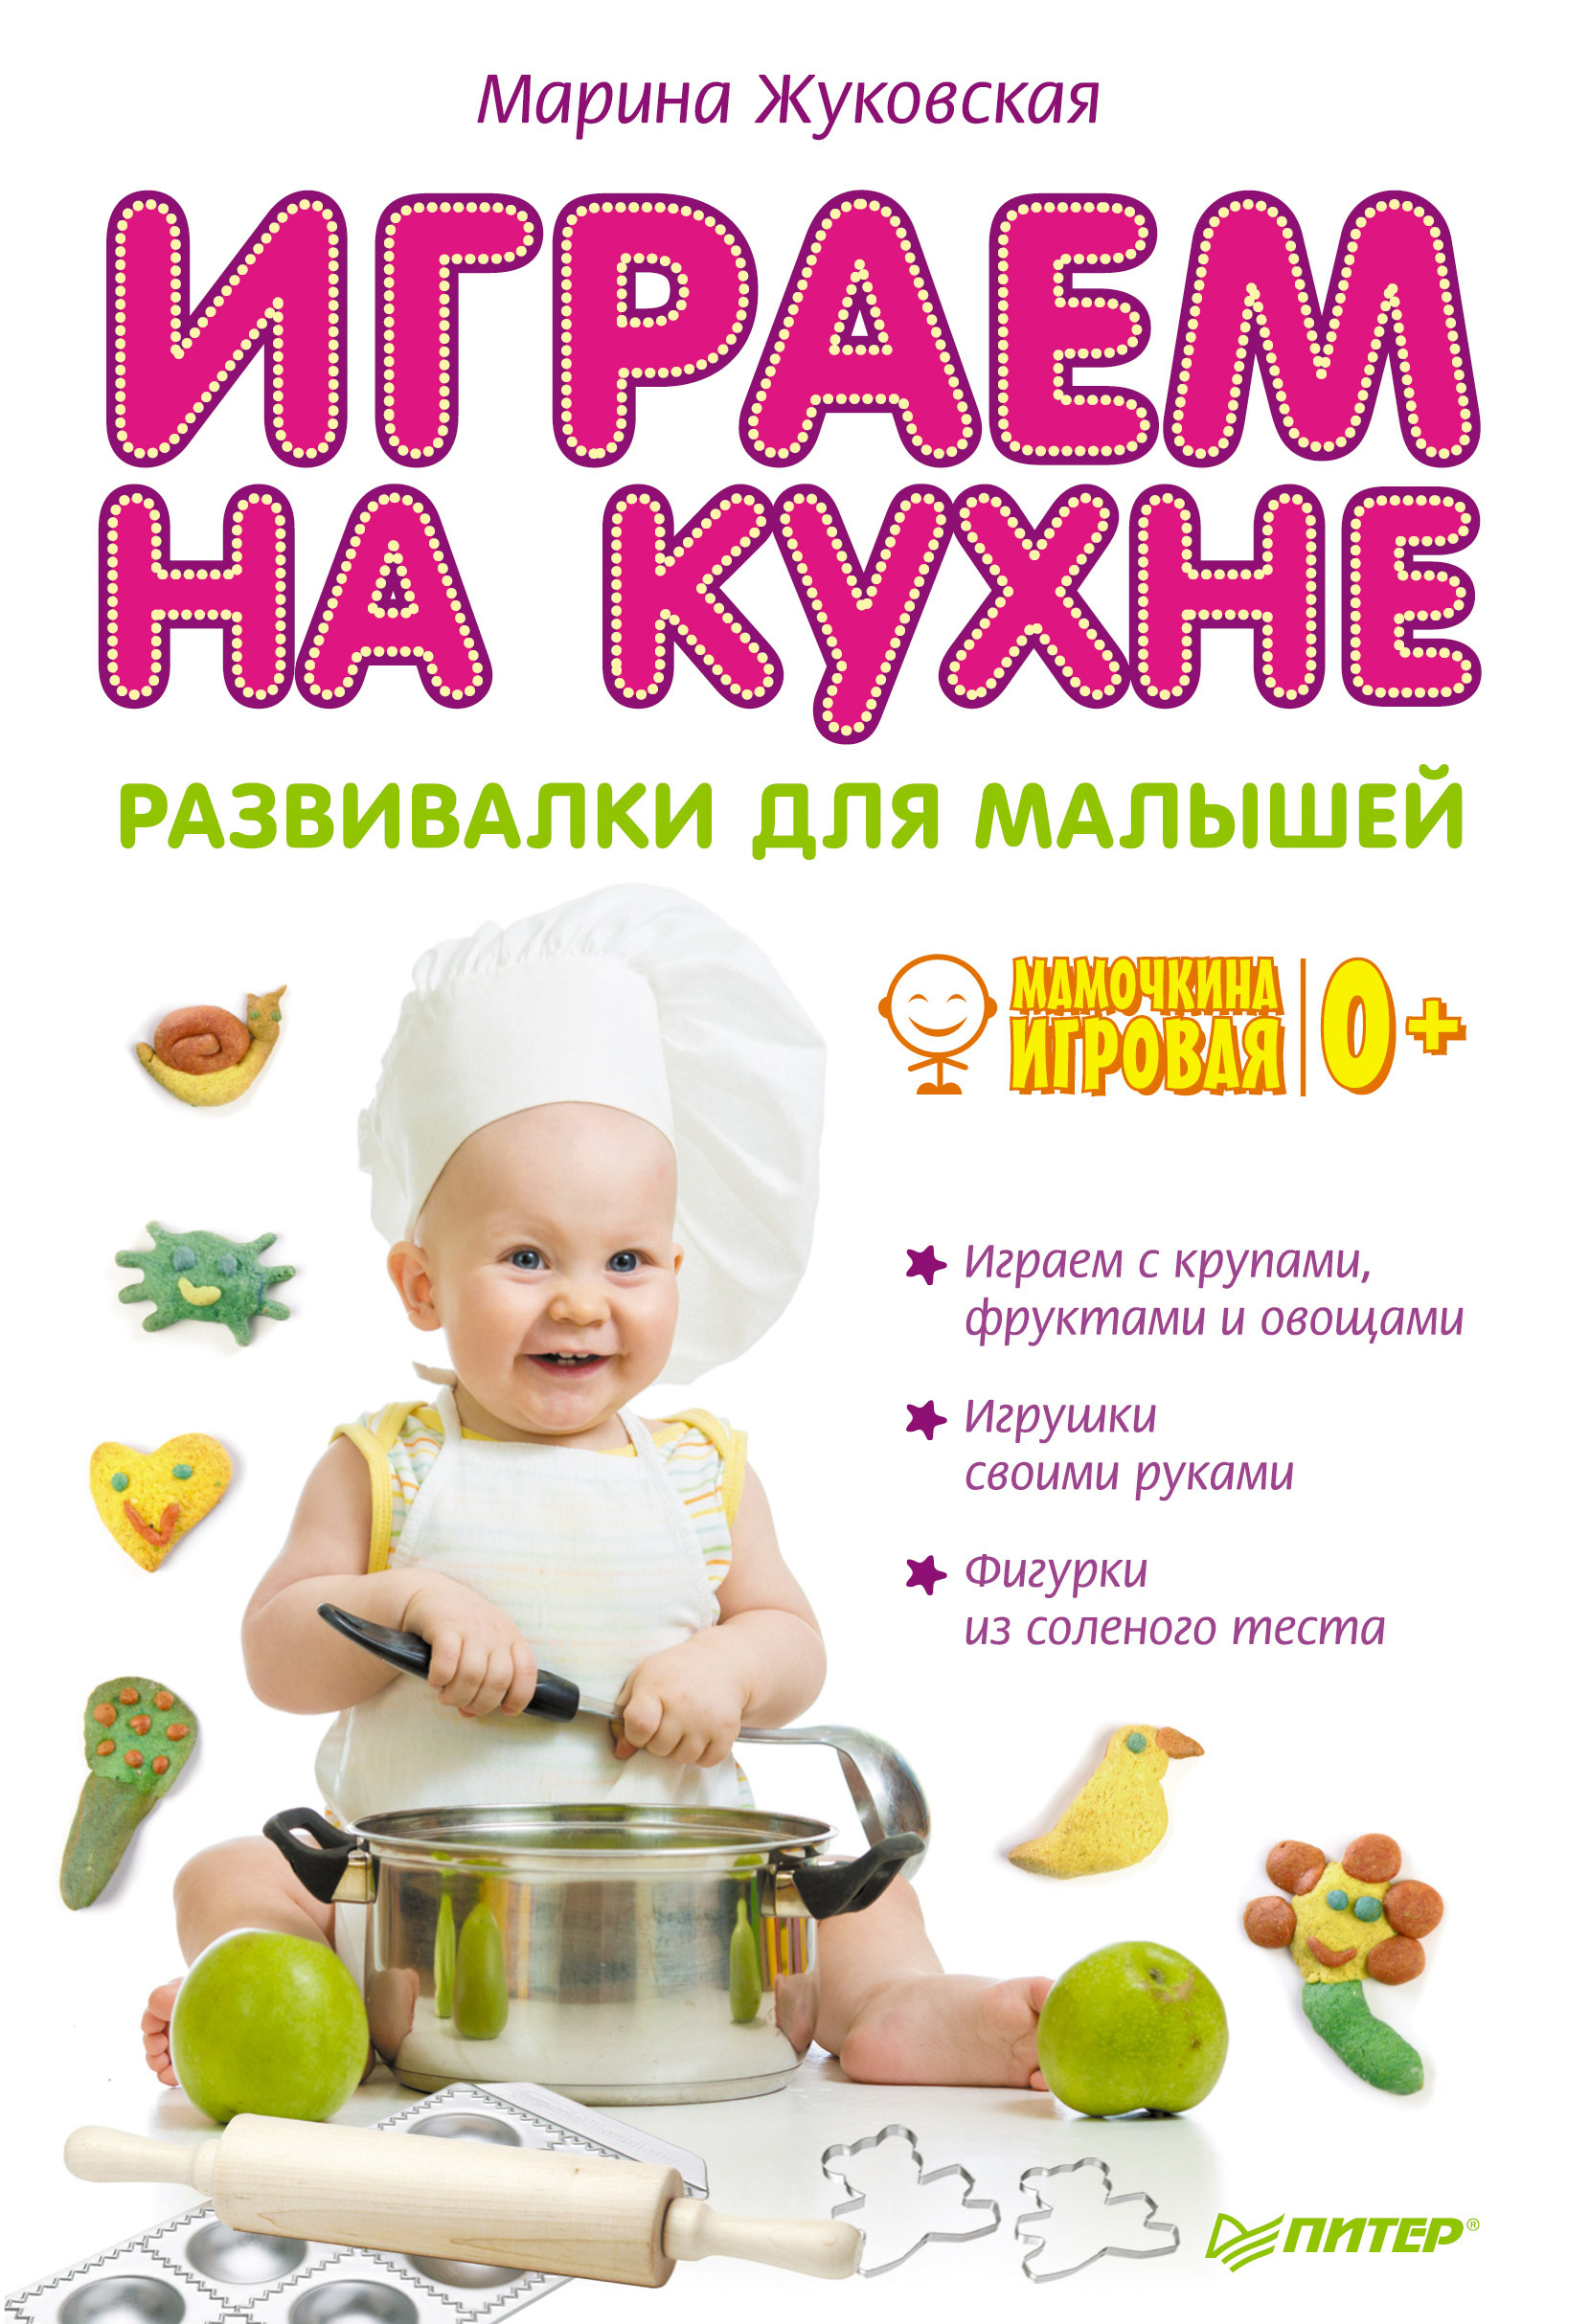 Марина Жуковская Играем на кухне. Развивалки для малышей